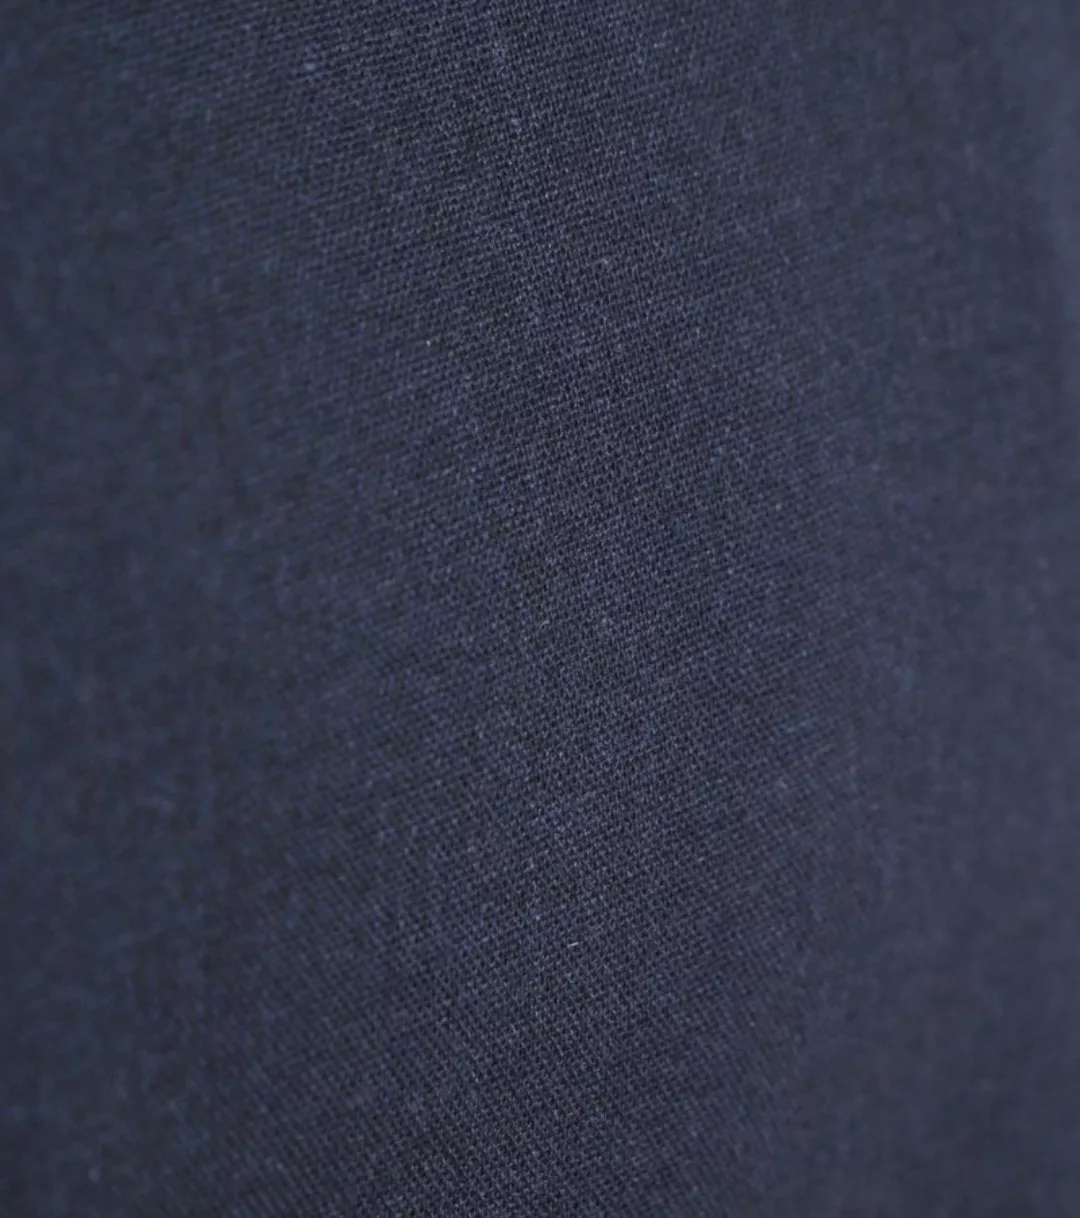 Anerkjendt Short Sleeve Hemd Leo Leinen Navy - Größe M günstig online kaufen